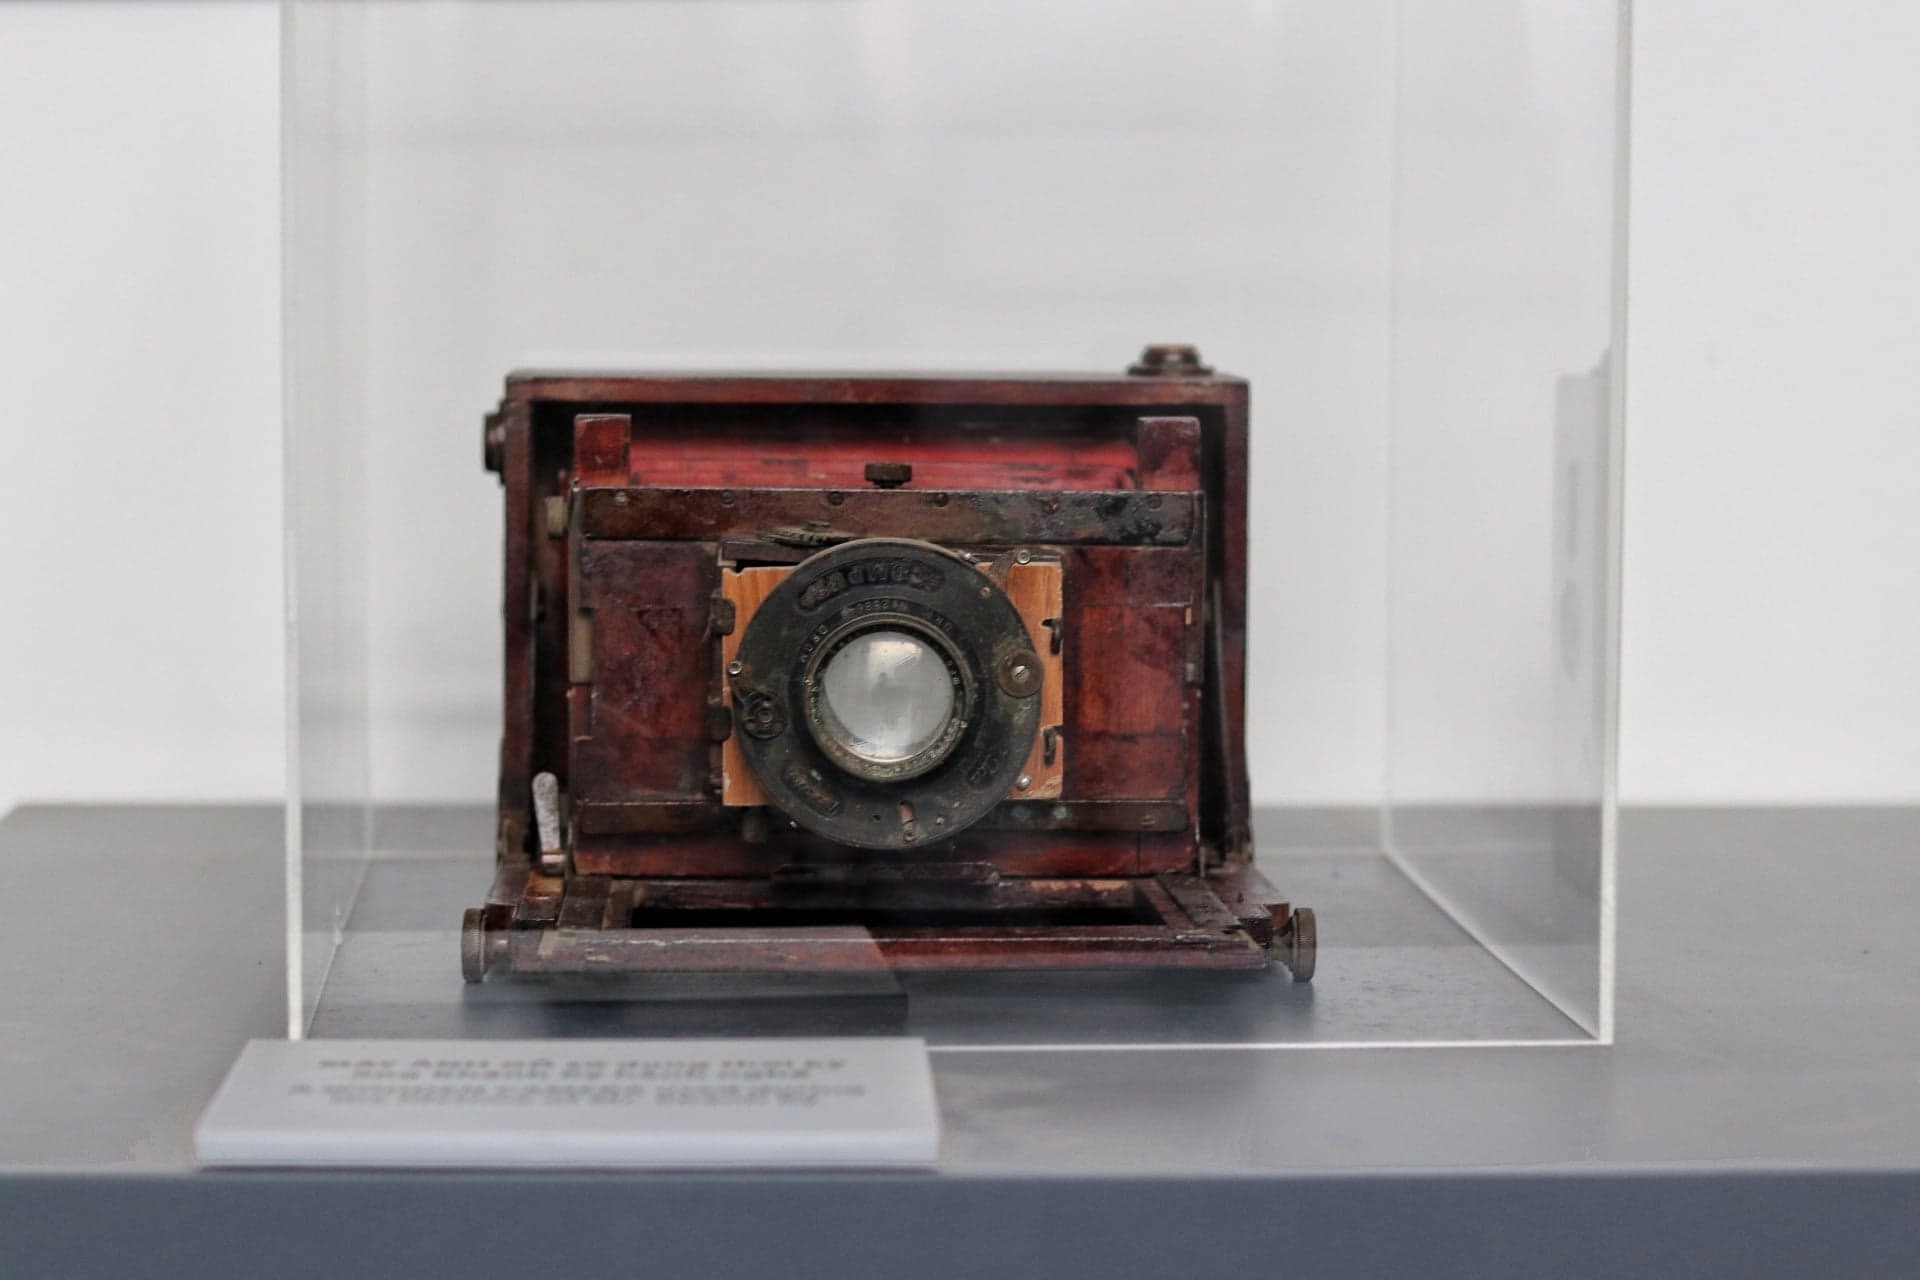 Bộ sưu tập máy ảnh cổ như Canon QL, Exa, Praktica...và cả những tấm phim ướt (wet plate) đã phai màu theo thời gian được trưng bày tại bảo tàng nhiếp ảnh Lai Xá.